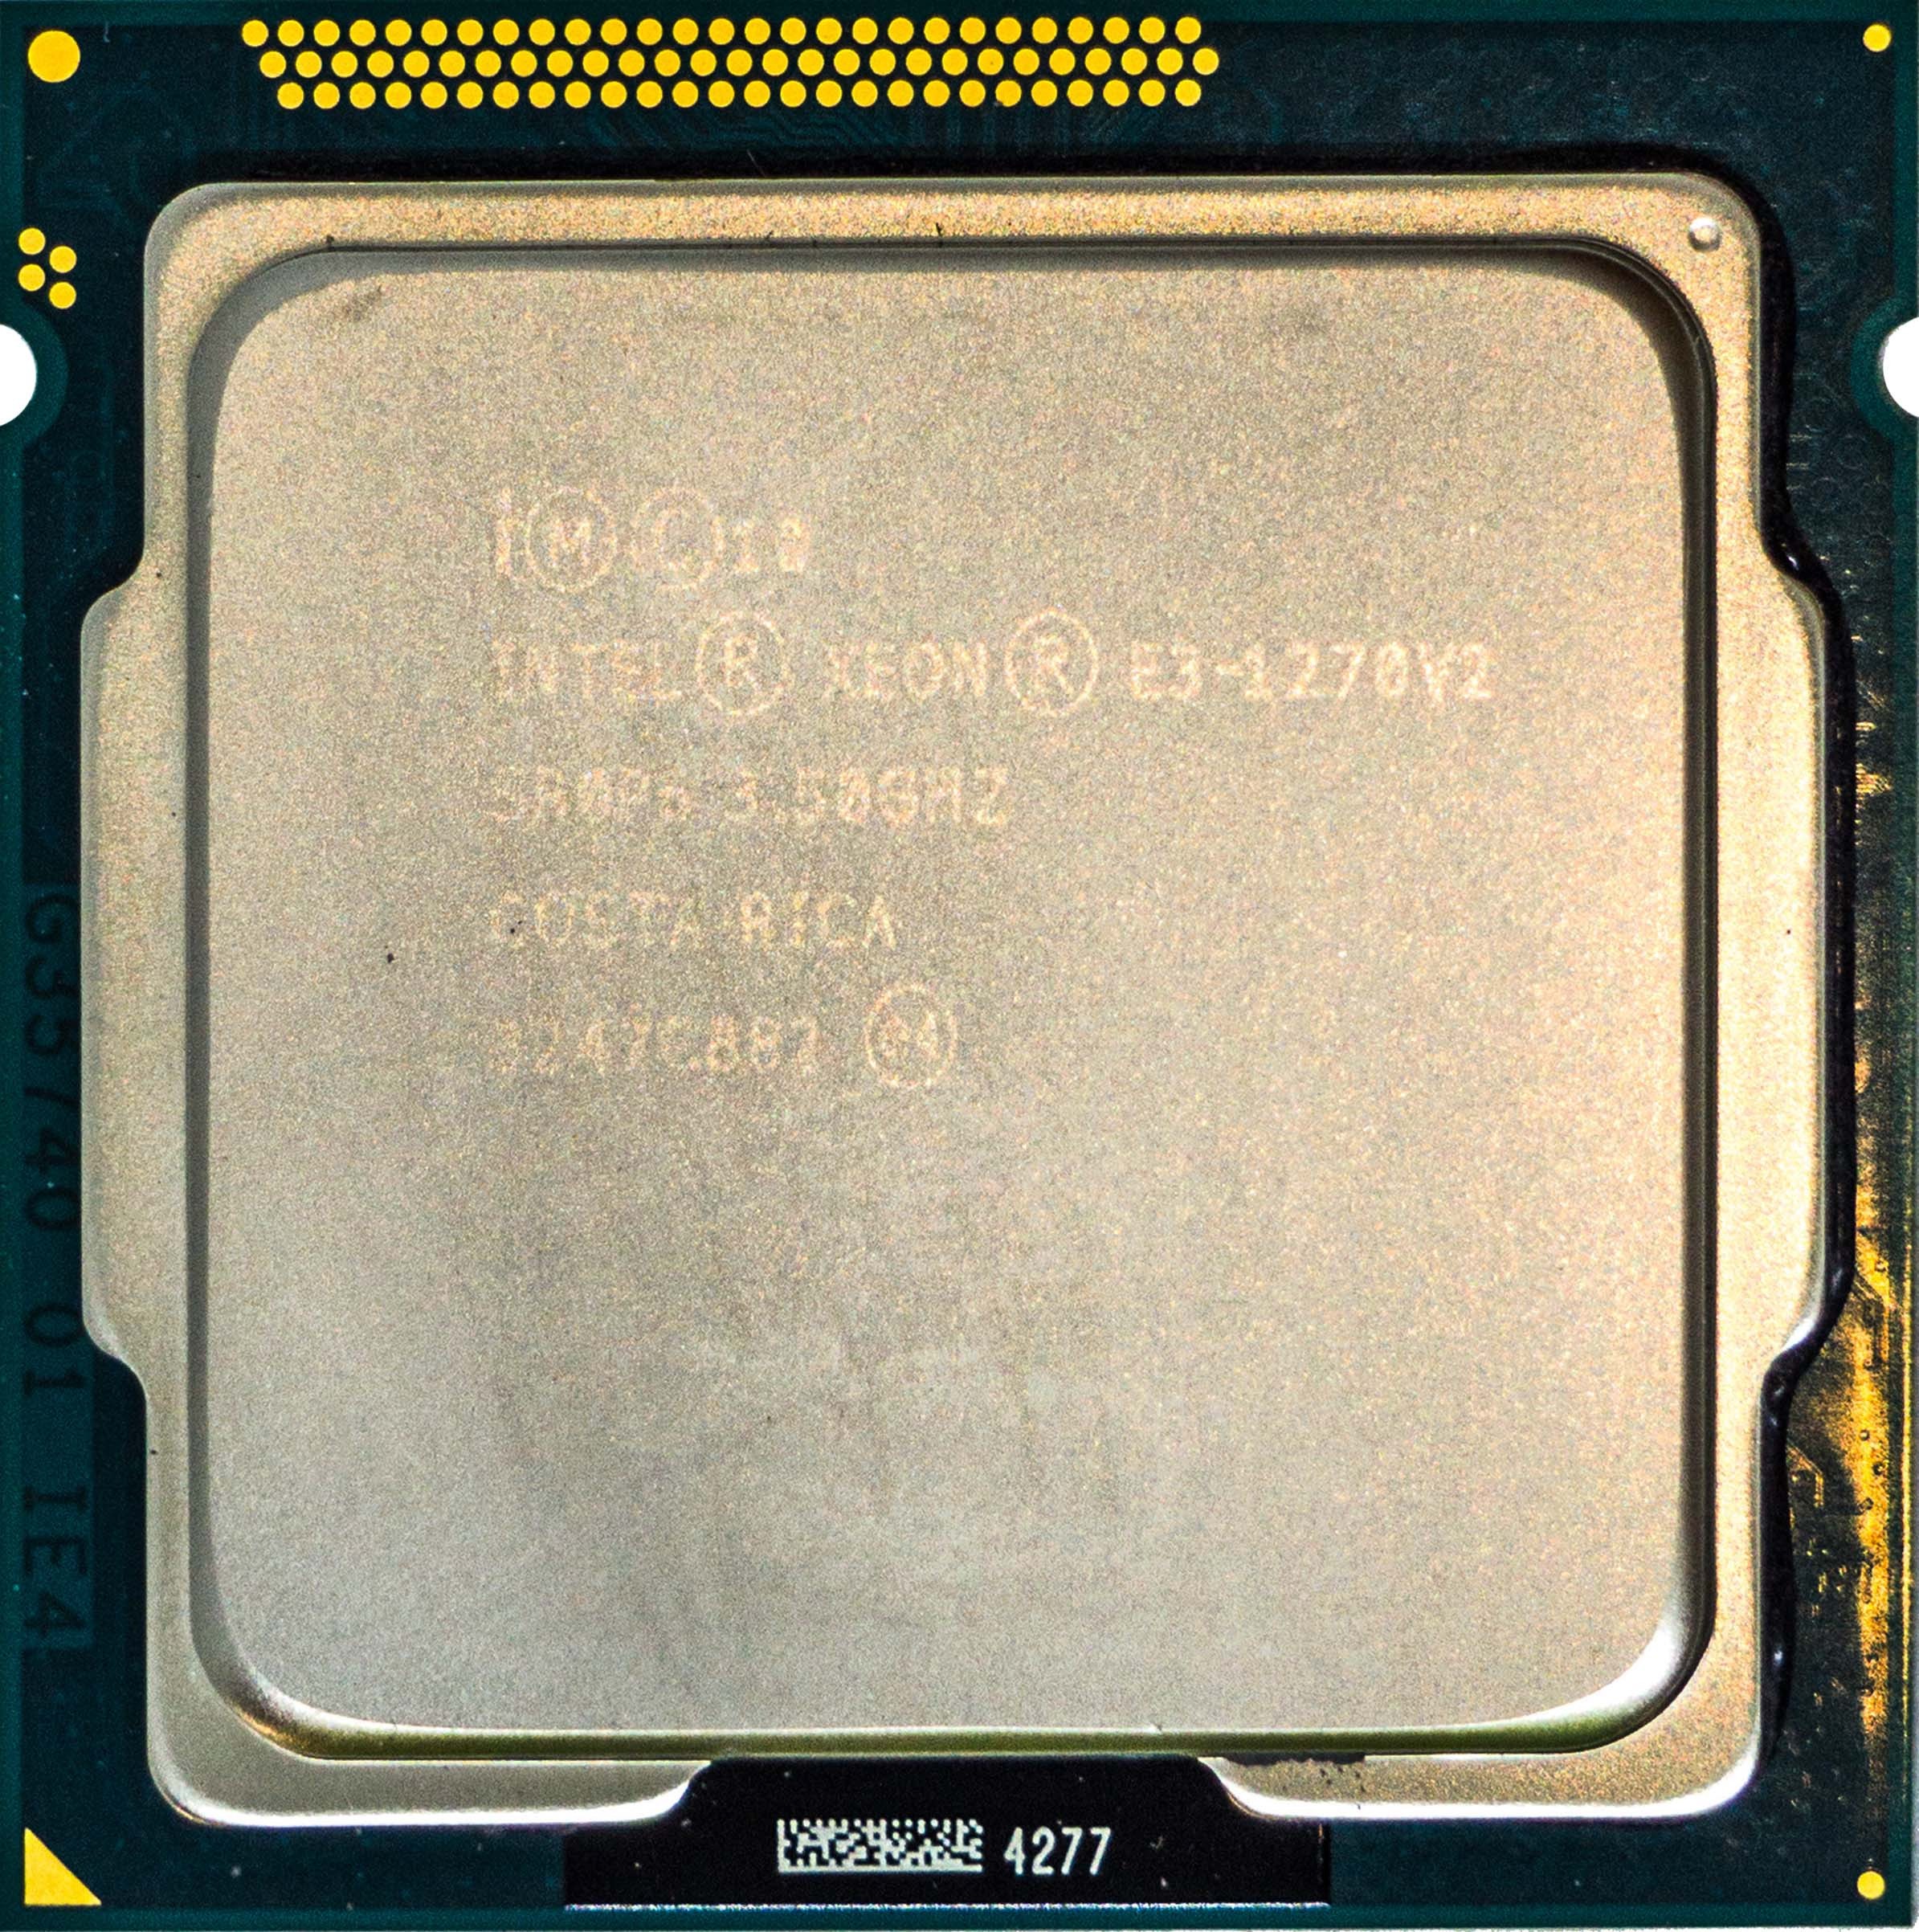 SR0P6 Intel Xeon E3-1270 V2 (SR0P6) 3.50Ghz Quad (4) Core LGA1155 69W CPU